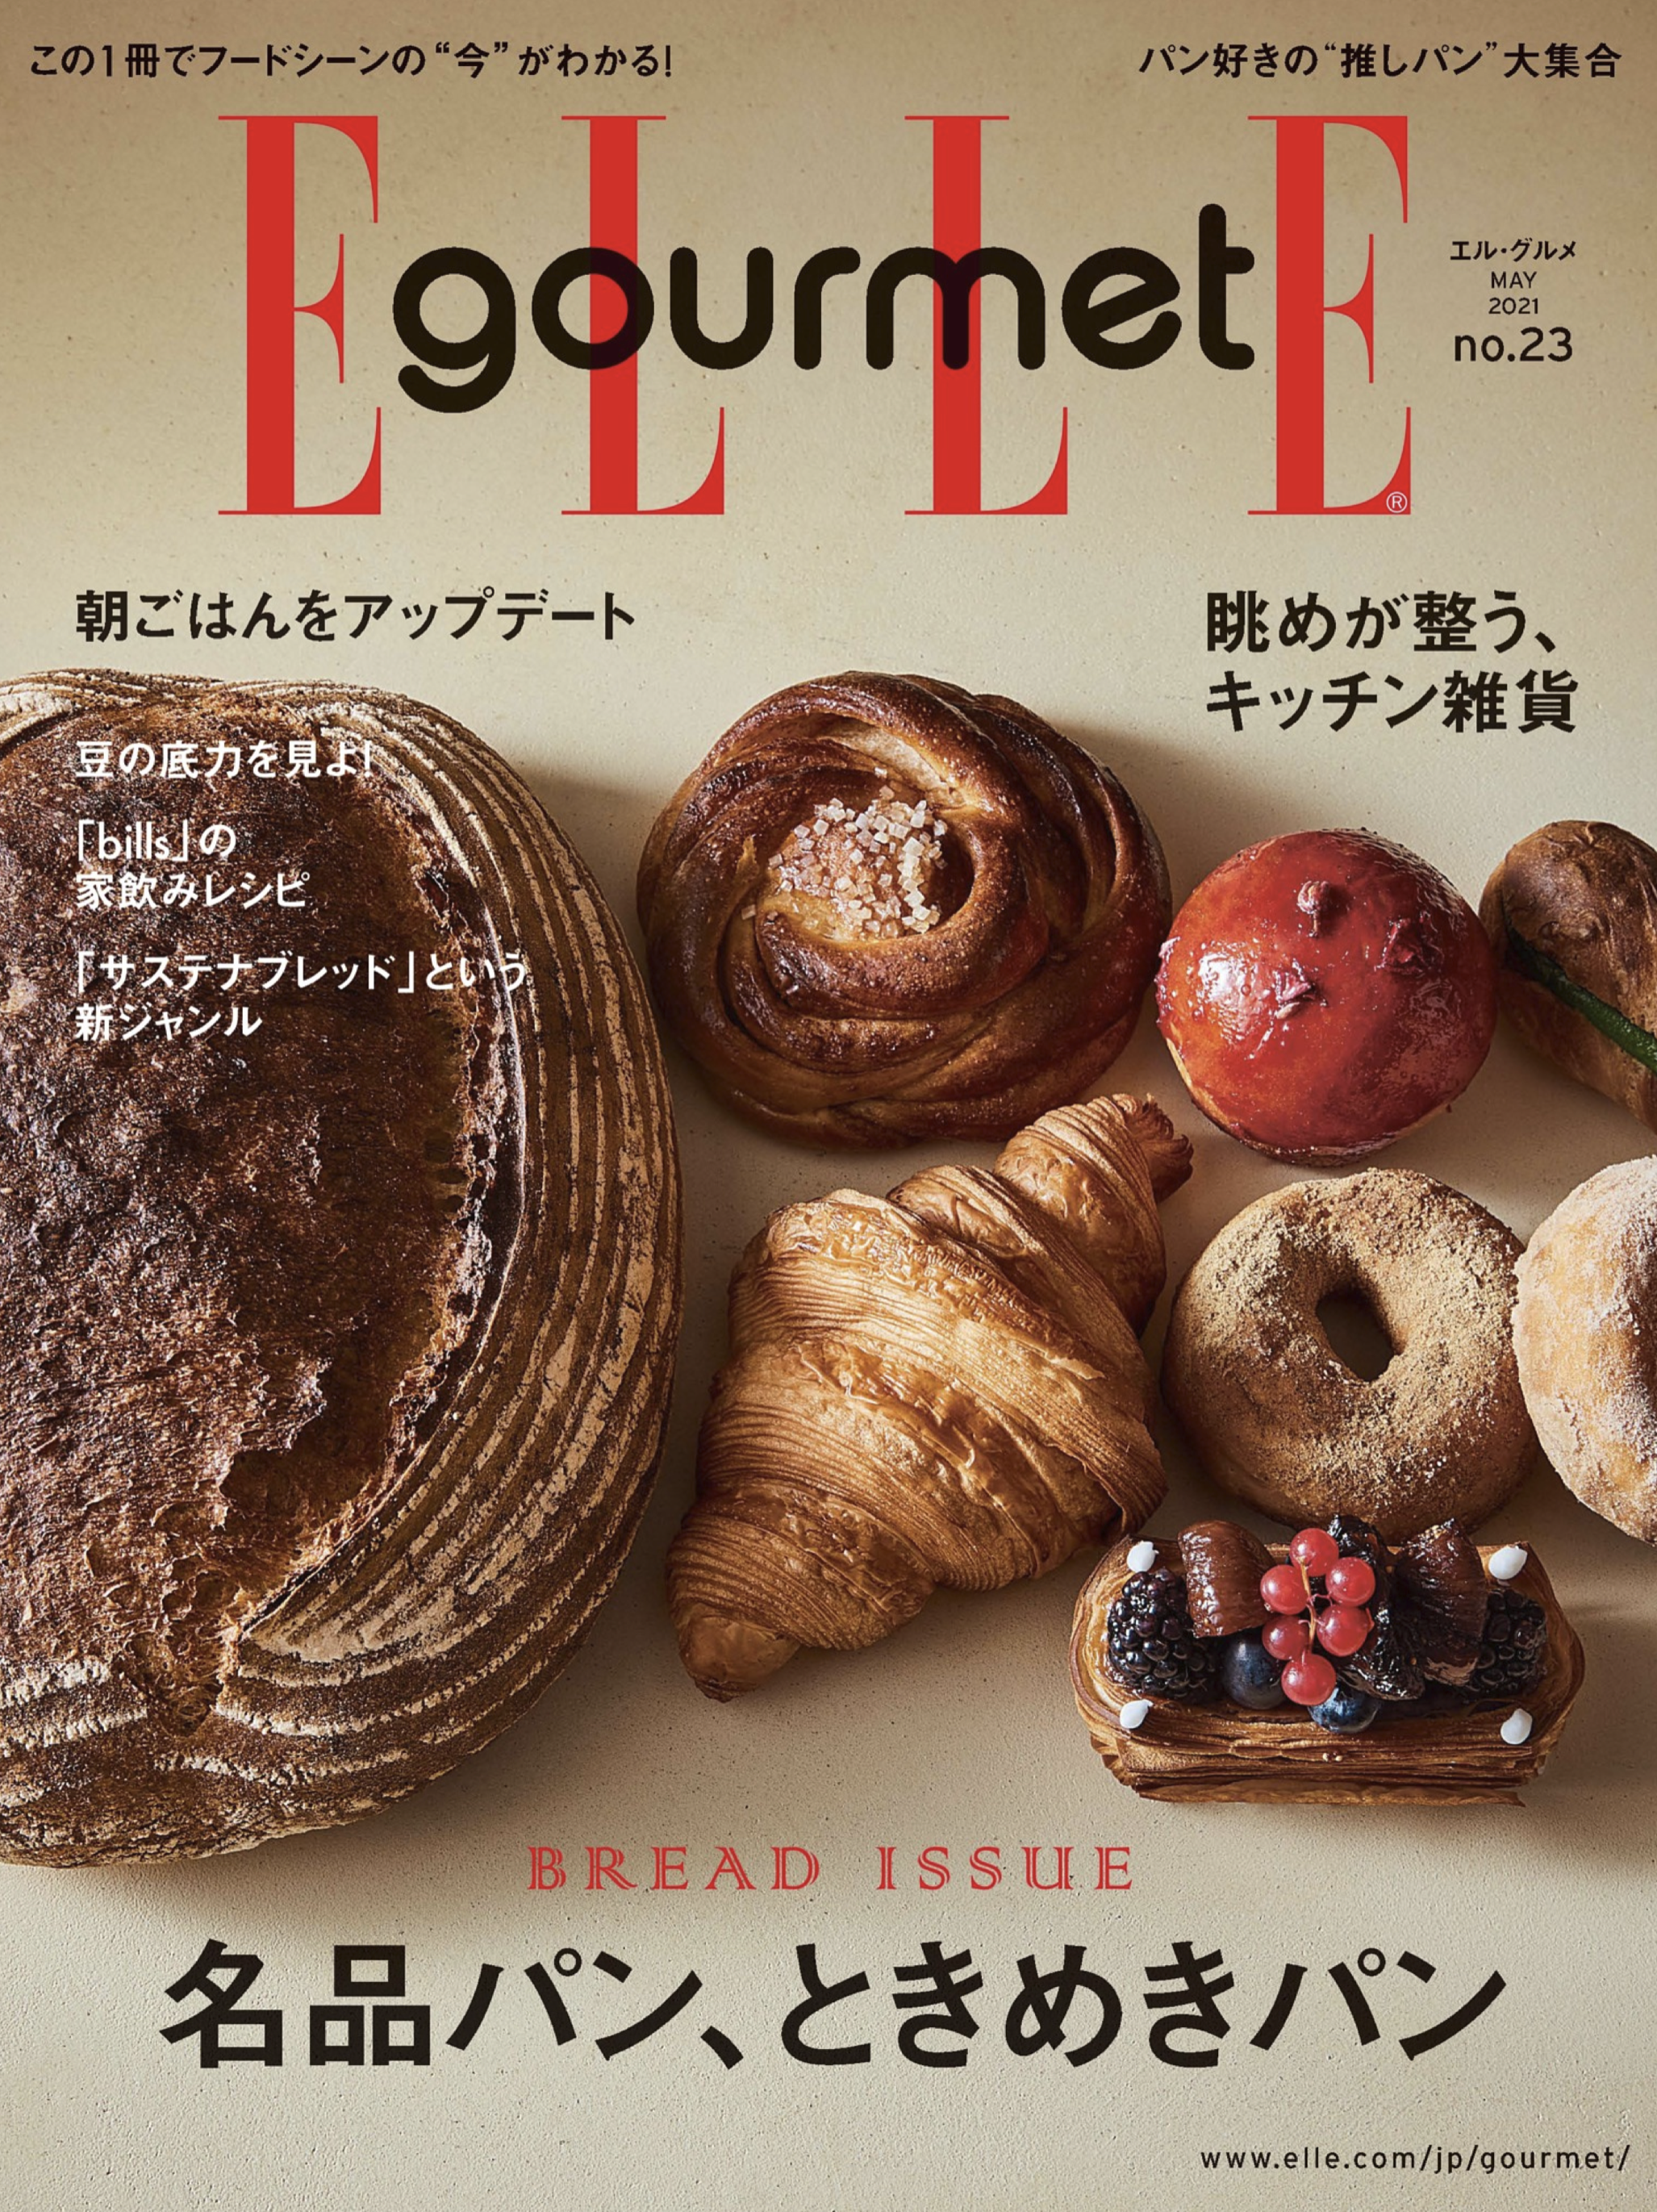 大木慎太郎がELLE gourmet 5月号の表紙と中ページを撮りおろしました